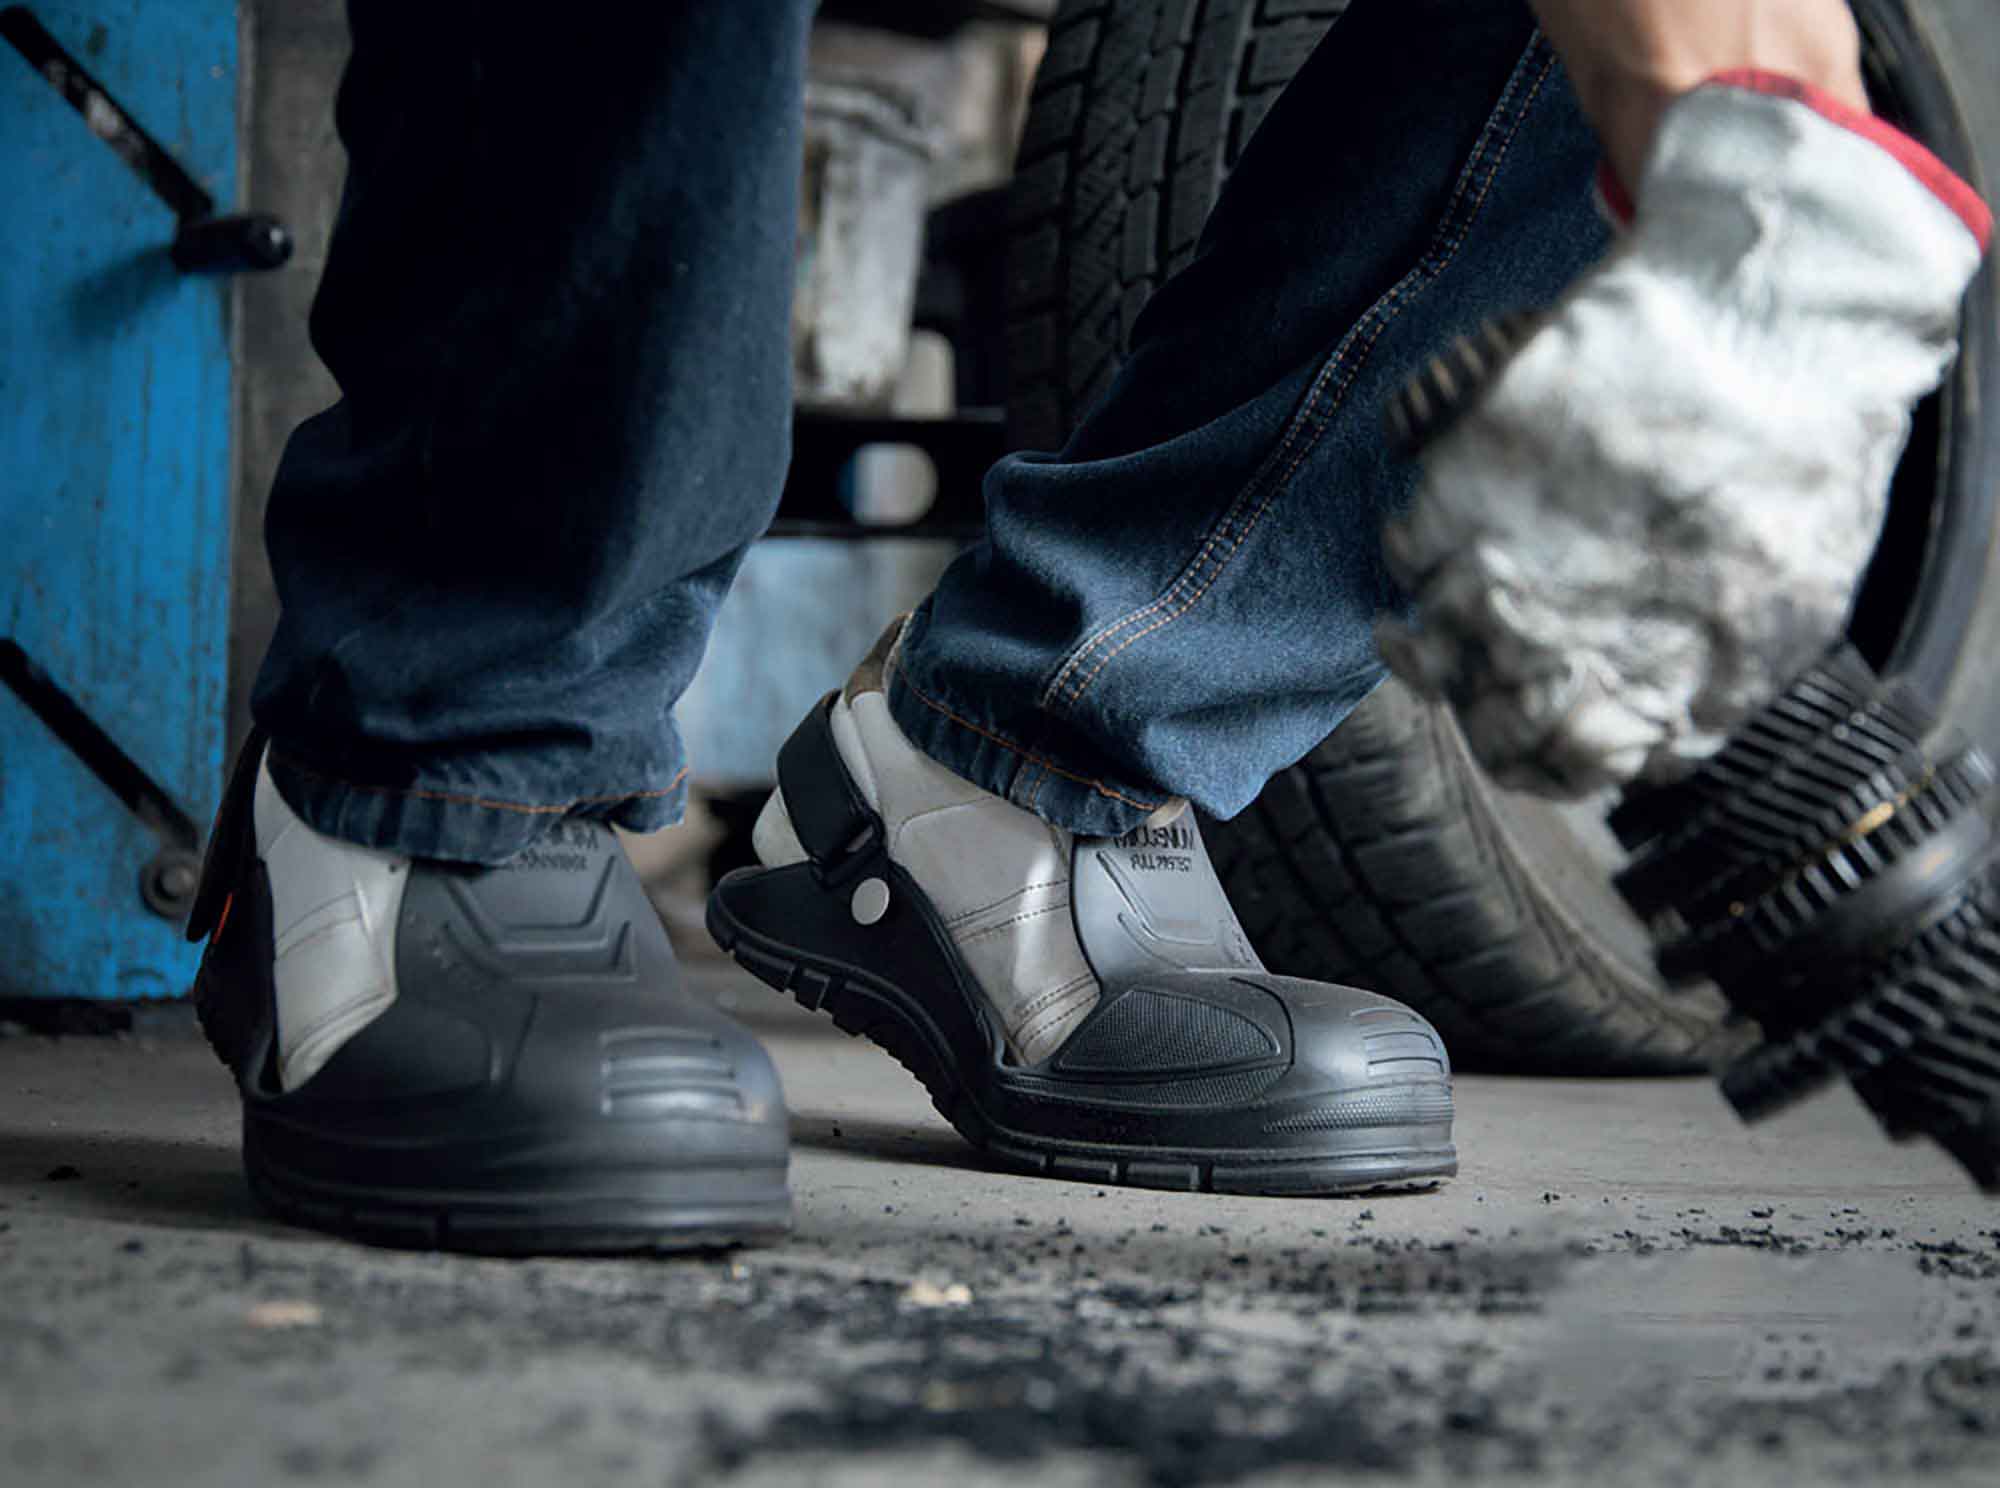 Gaston mille : fabricant de chaussures et sur-chaussures de sécurité